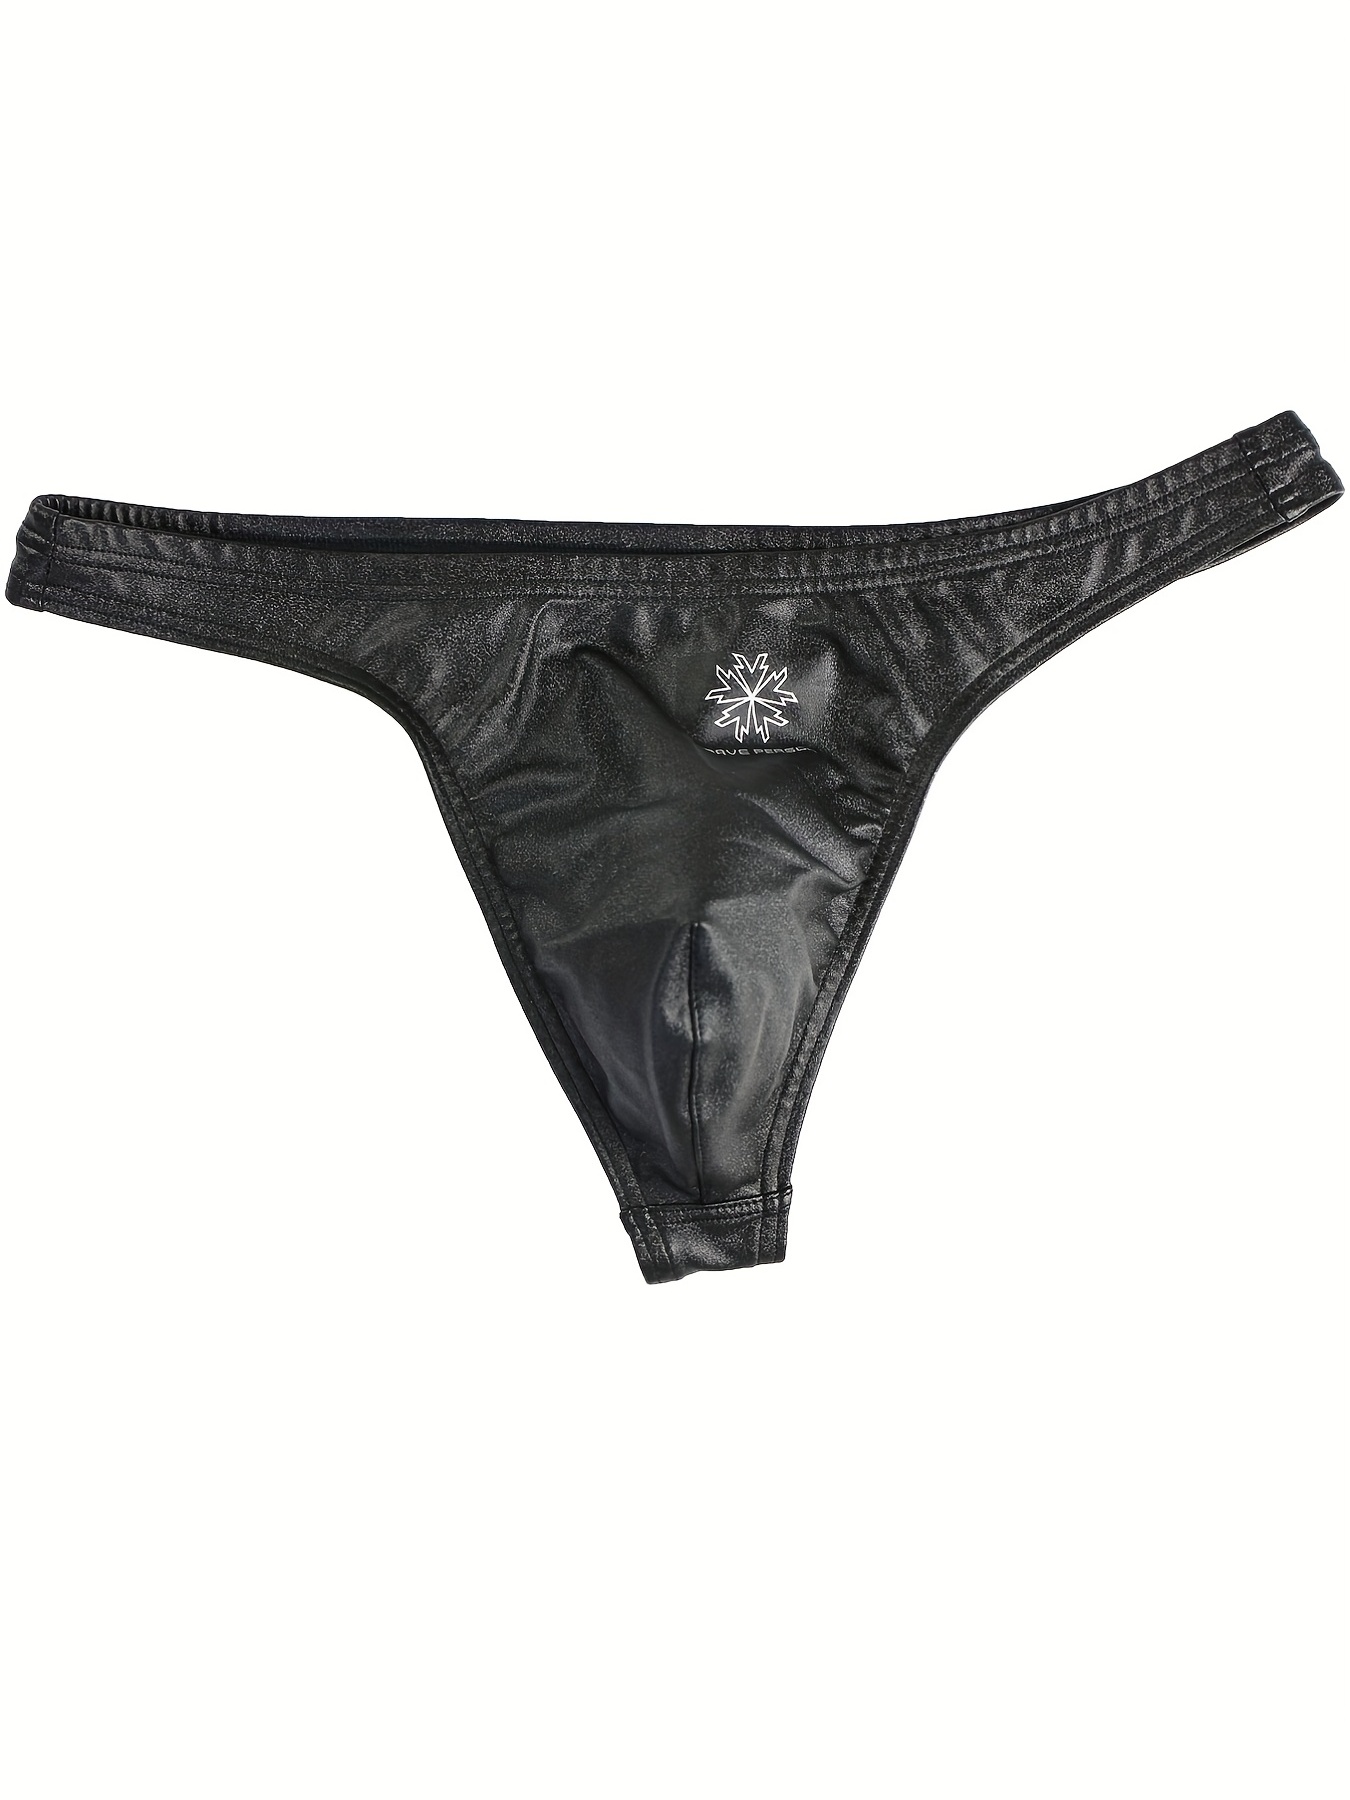 Men's Black Faux Leather Jockstrap Thong Underwear Bulge Pouch